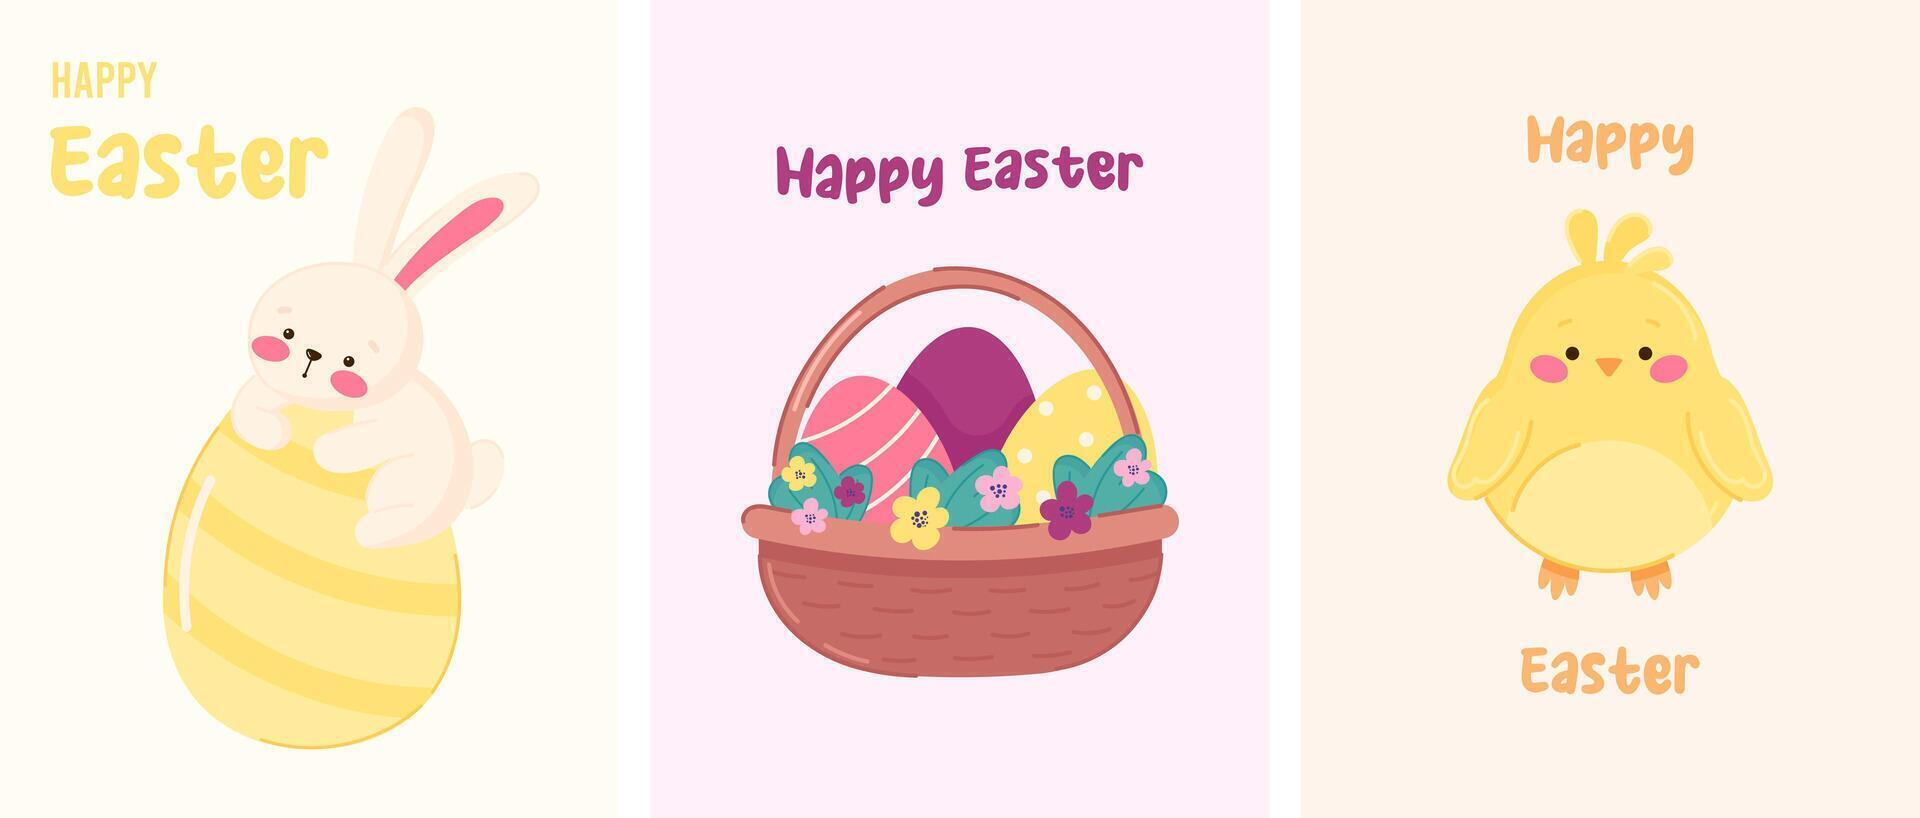 contento Pascua de Resurrección conjunto de tarjetas, carteles, bandera plantillas con linda conejito, polluelo y cesta con Pascua de Resurrección huevos vector